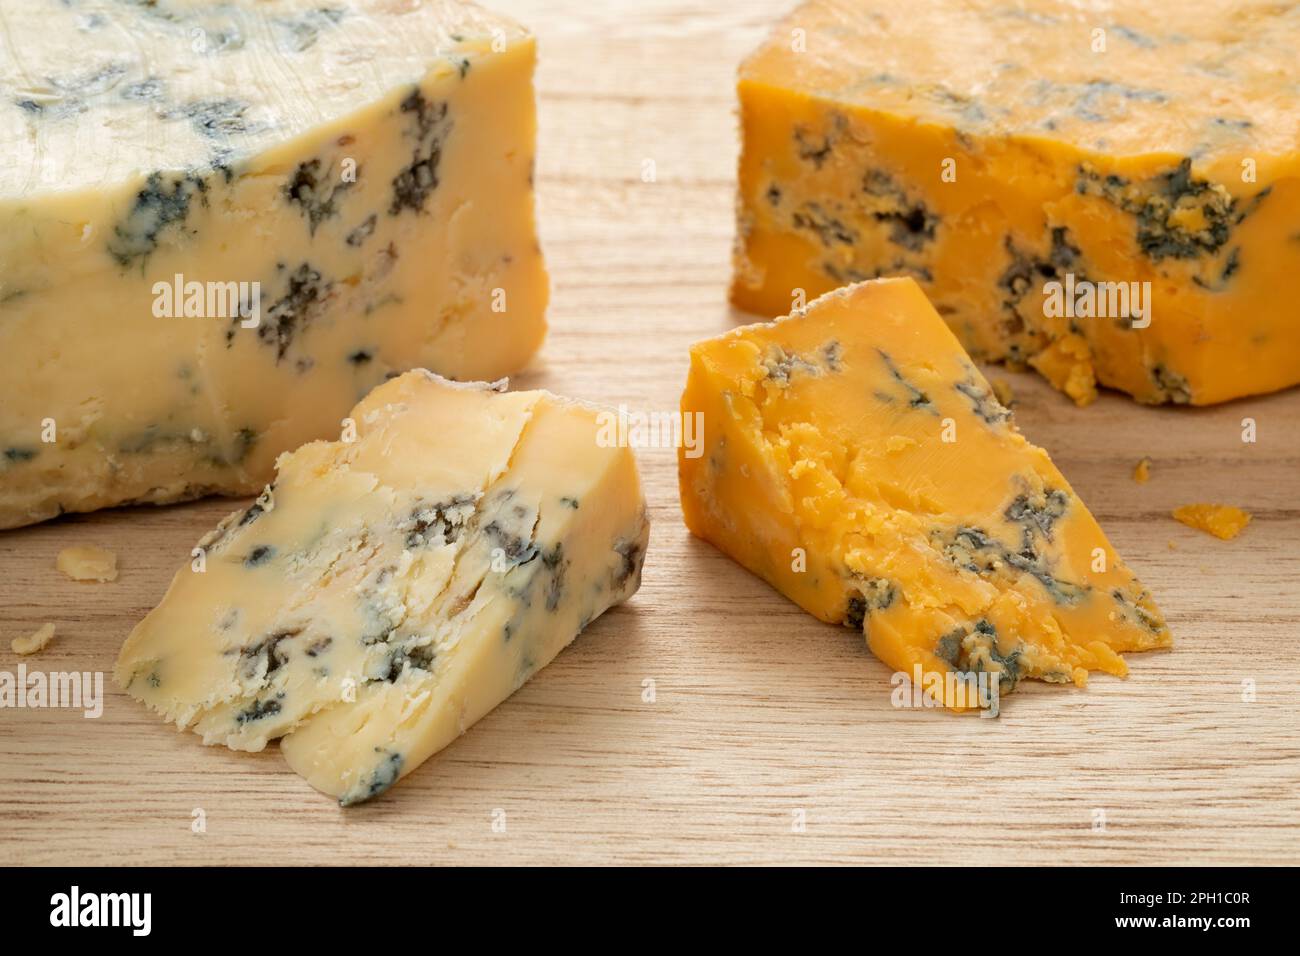 Ein Stück englischer Shropshire Blue Cheese und ein Stück Stilton-Käse auf einem Schneidebrett für einen Snack aus nächster Nähe Stockfoto